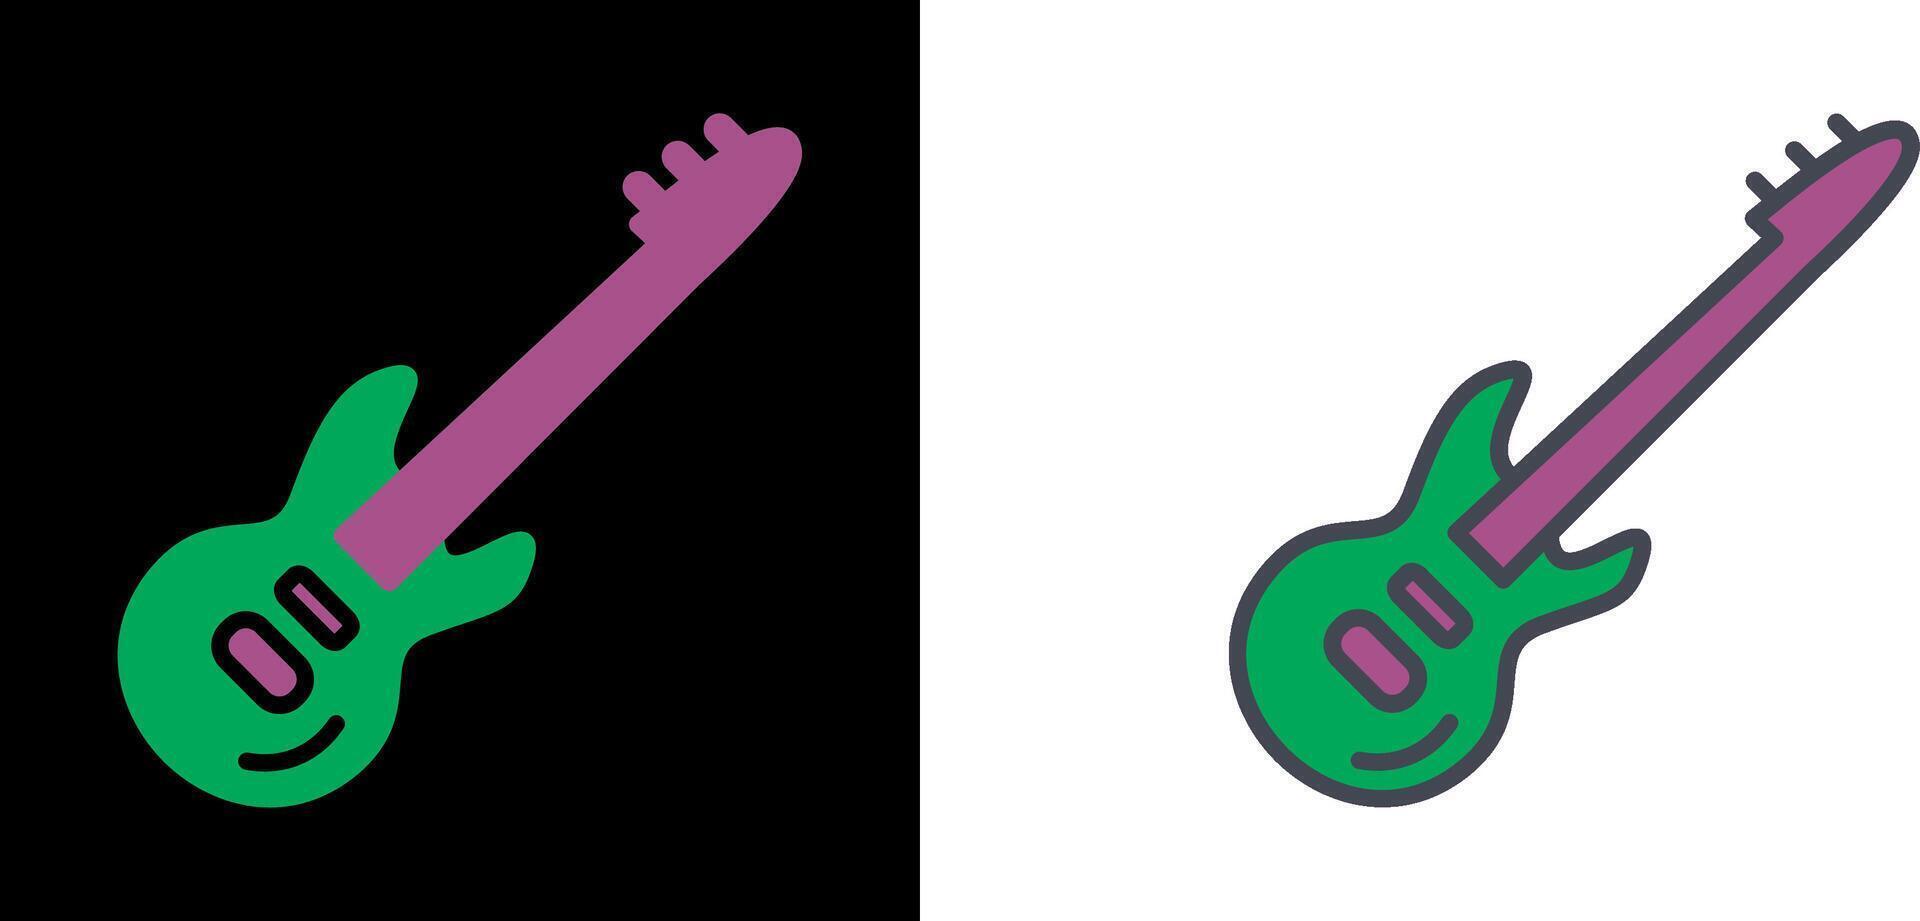 Gitarren-Icon-Design vektor